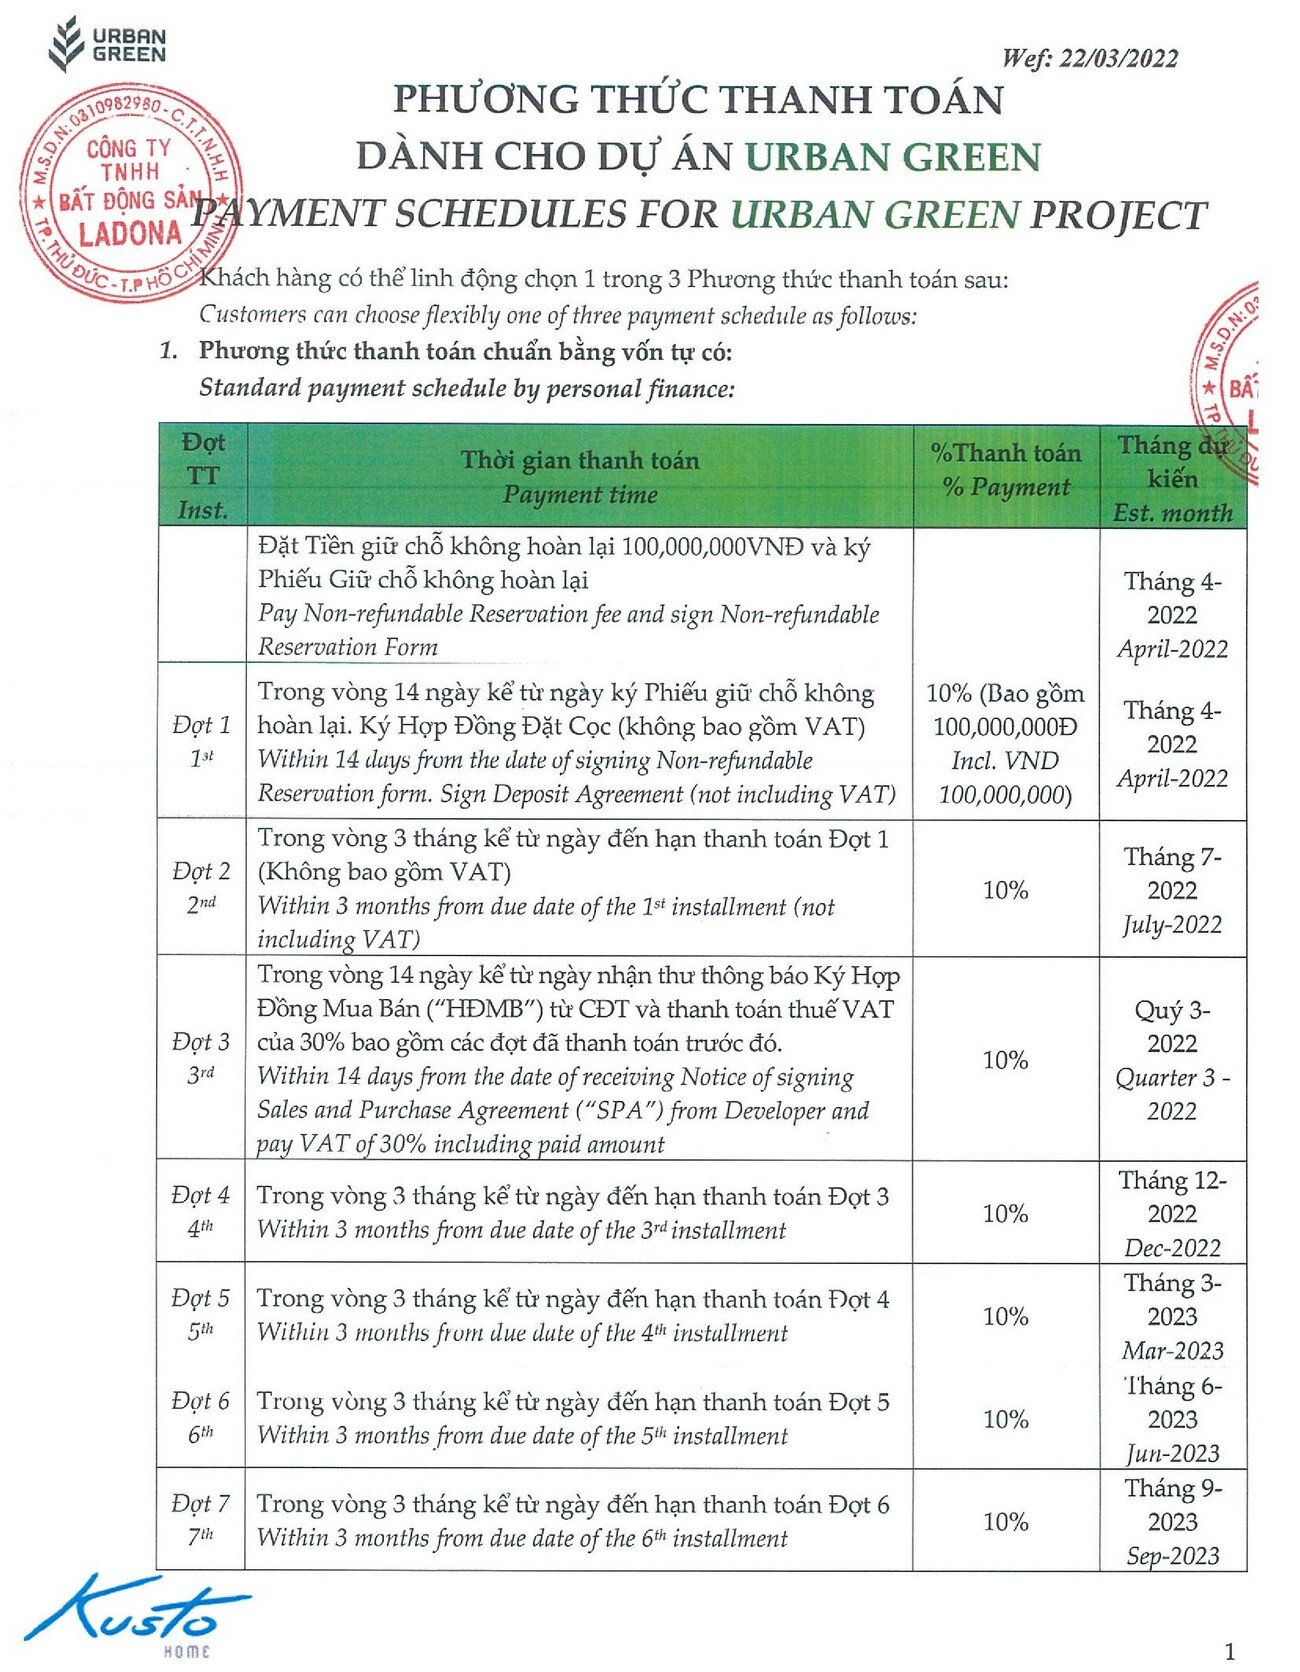 Phương thức thanh toán dự án Urban Green.